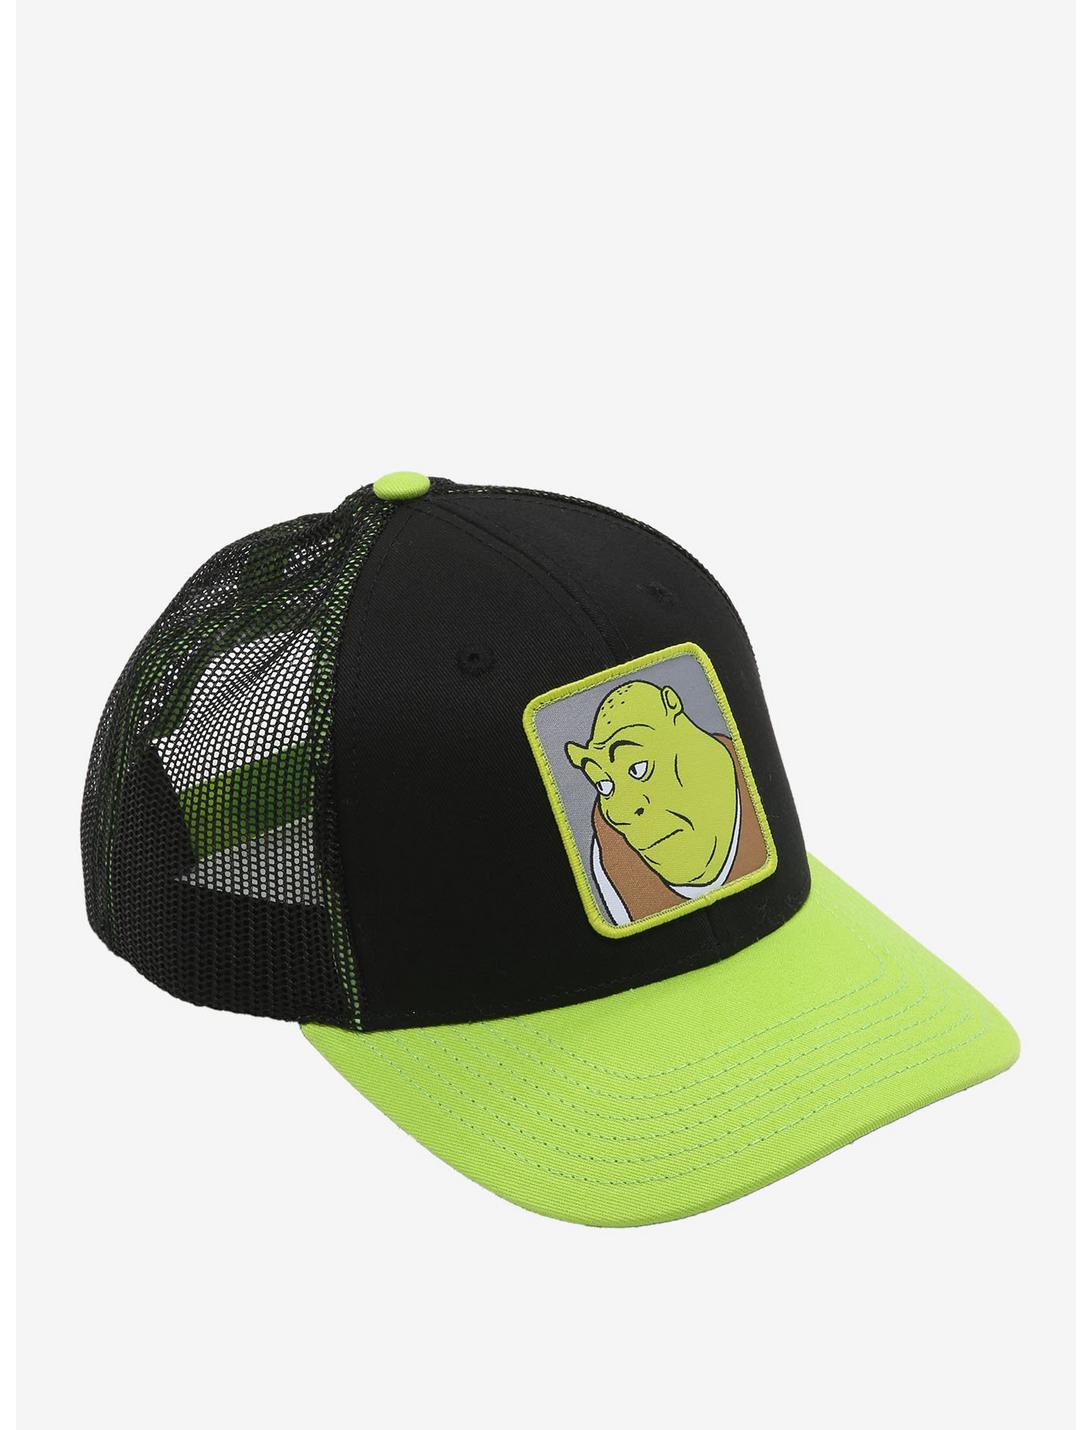 Shrek Meme Trucker Hat, , hi-res